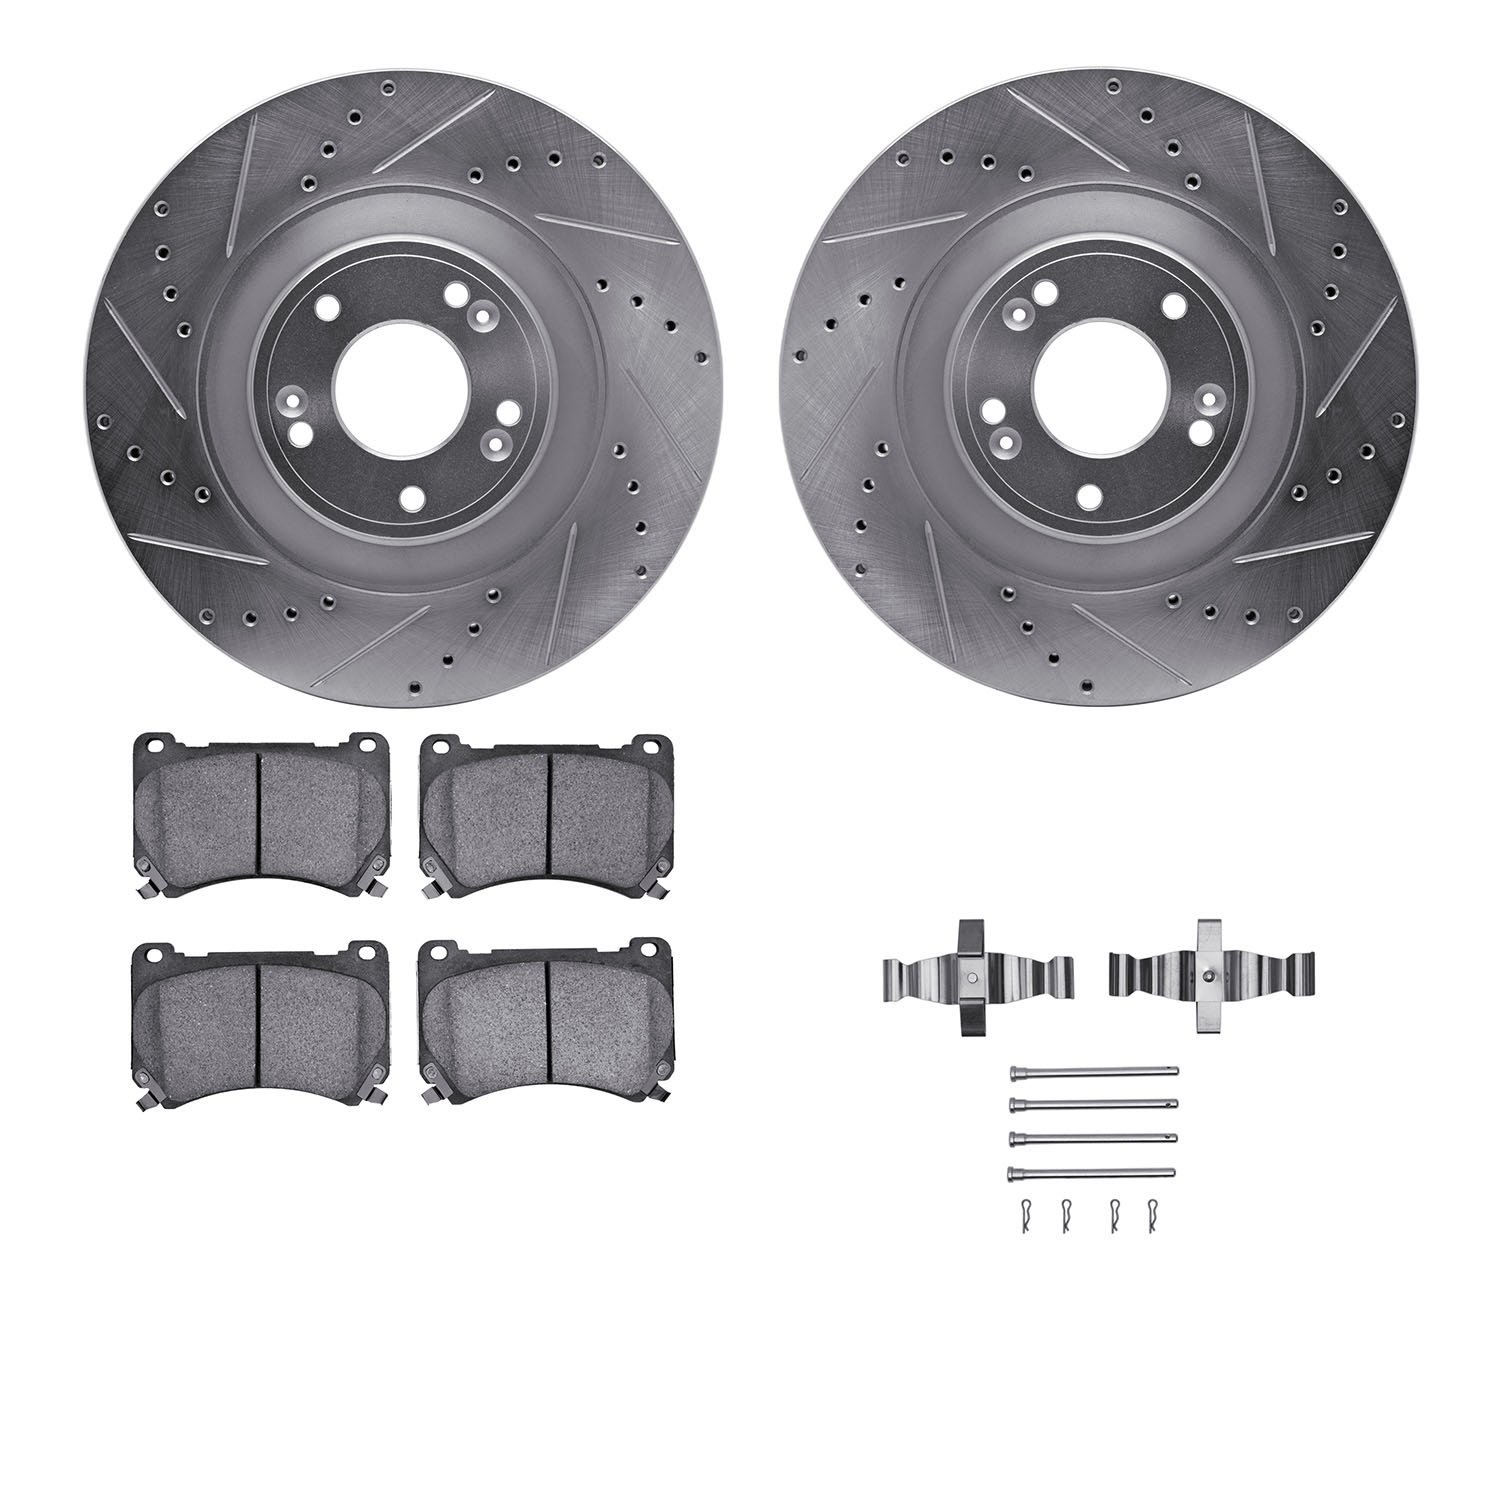 7312-03058 Drilled/Slotted Brake Rotor with 3000-Series Ceramic Brake Pads Kit & Hardware [Silver], 2011-2014 Kia/Hyundai/Genesi